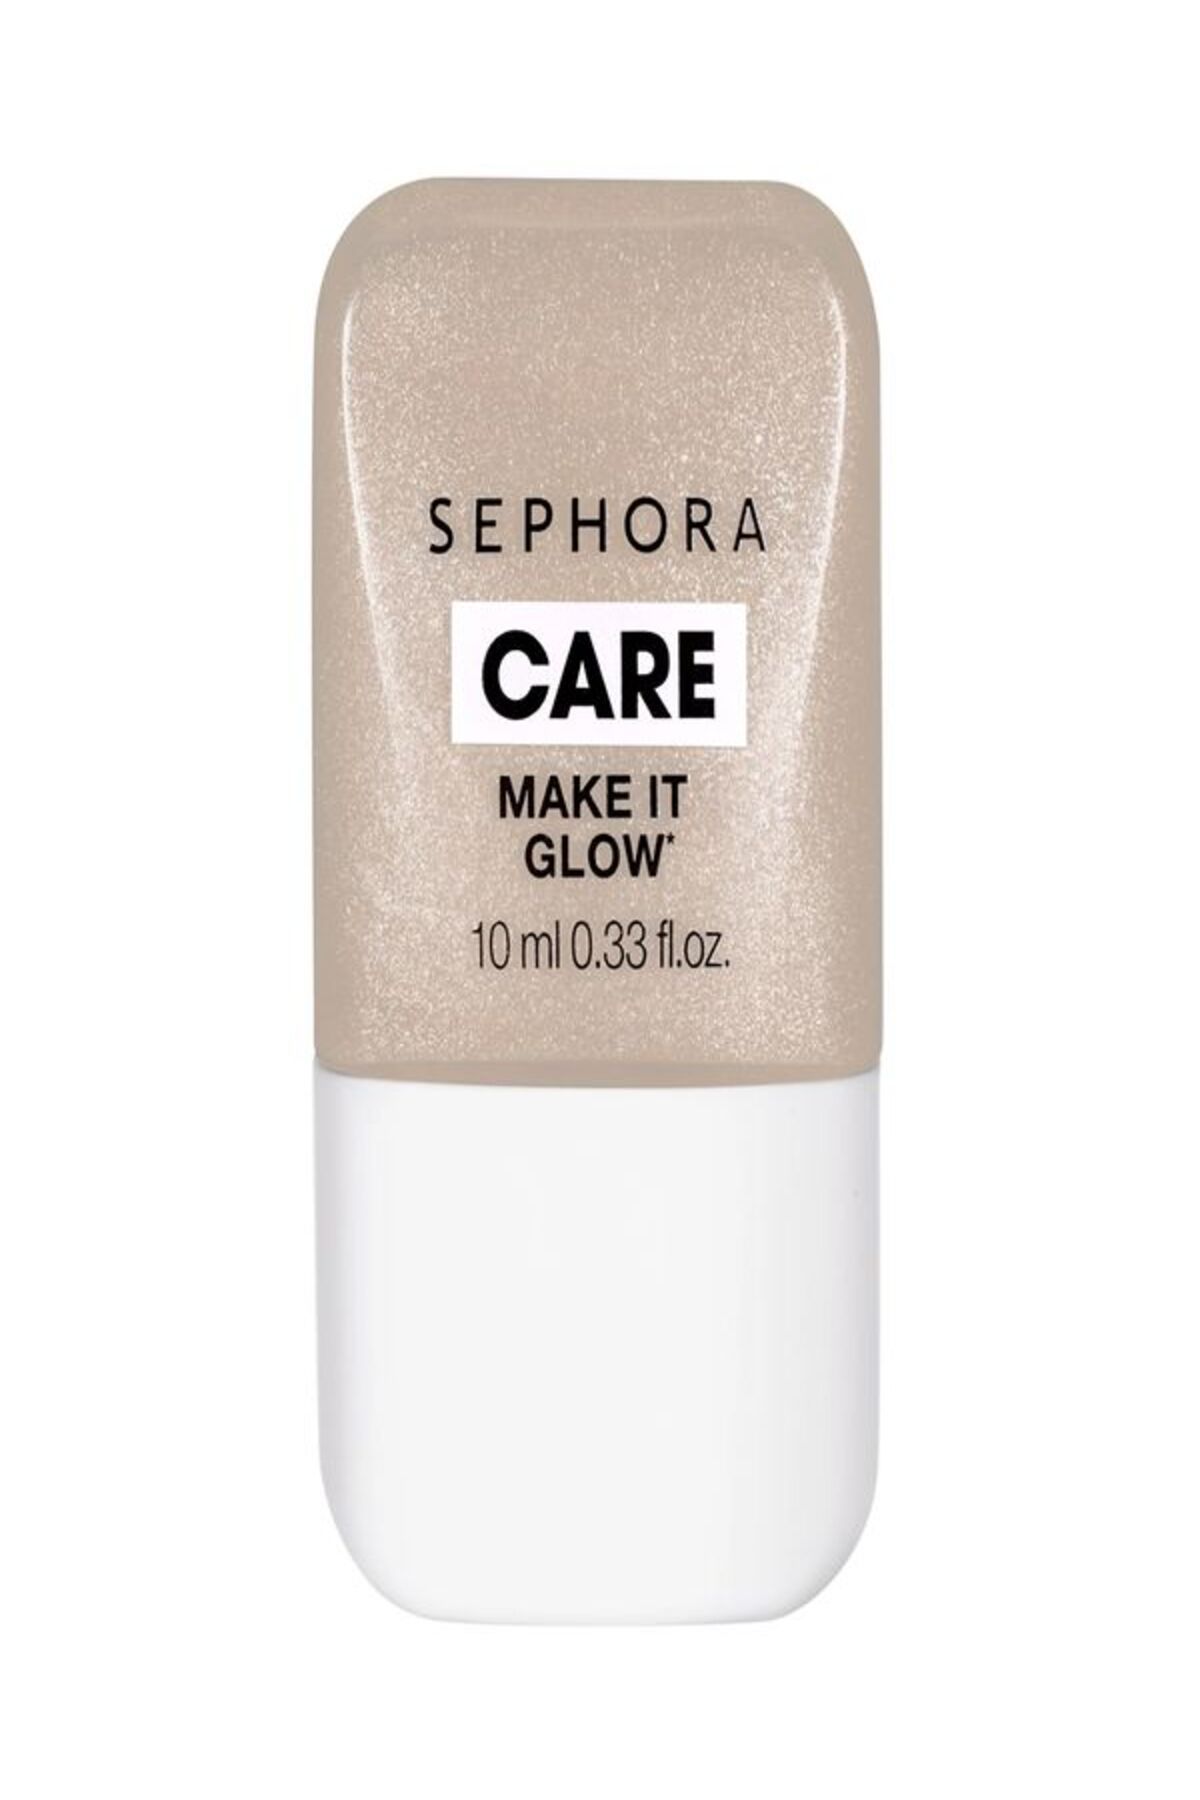 Sephora Make It Glow - Likit Aydınlatıcı 3'ü 1 arada, Rengi koruyan likit aydınlatıcı 10ml